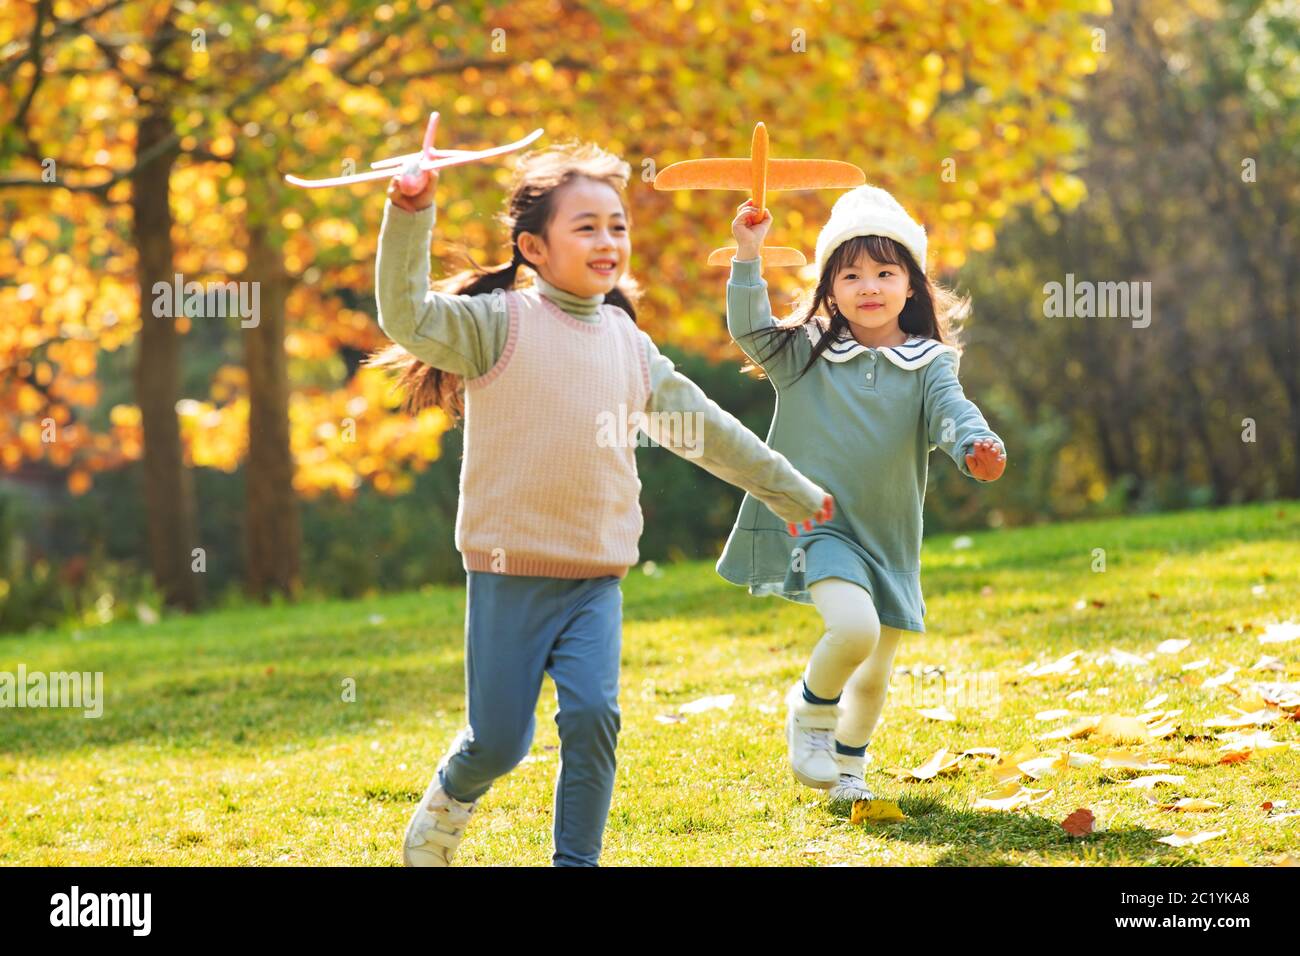 Le ragazze giocano nel parco con un aereo giocattolo Foto Stock